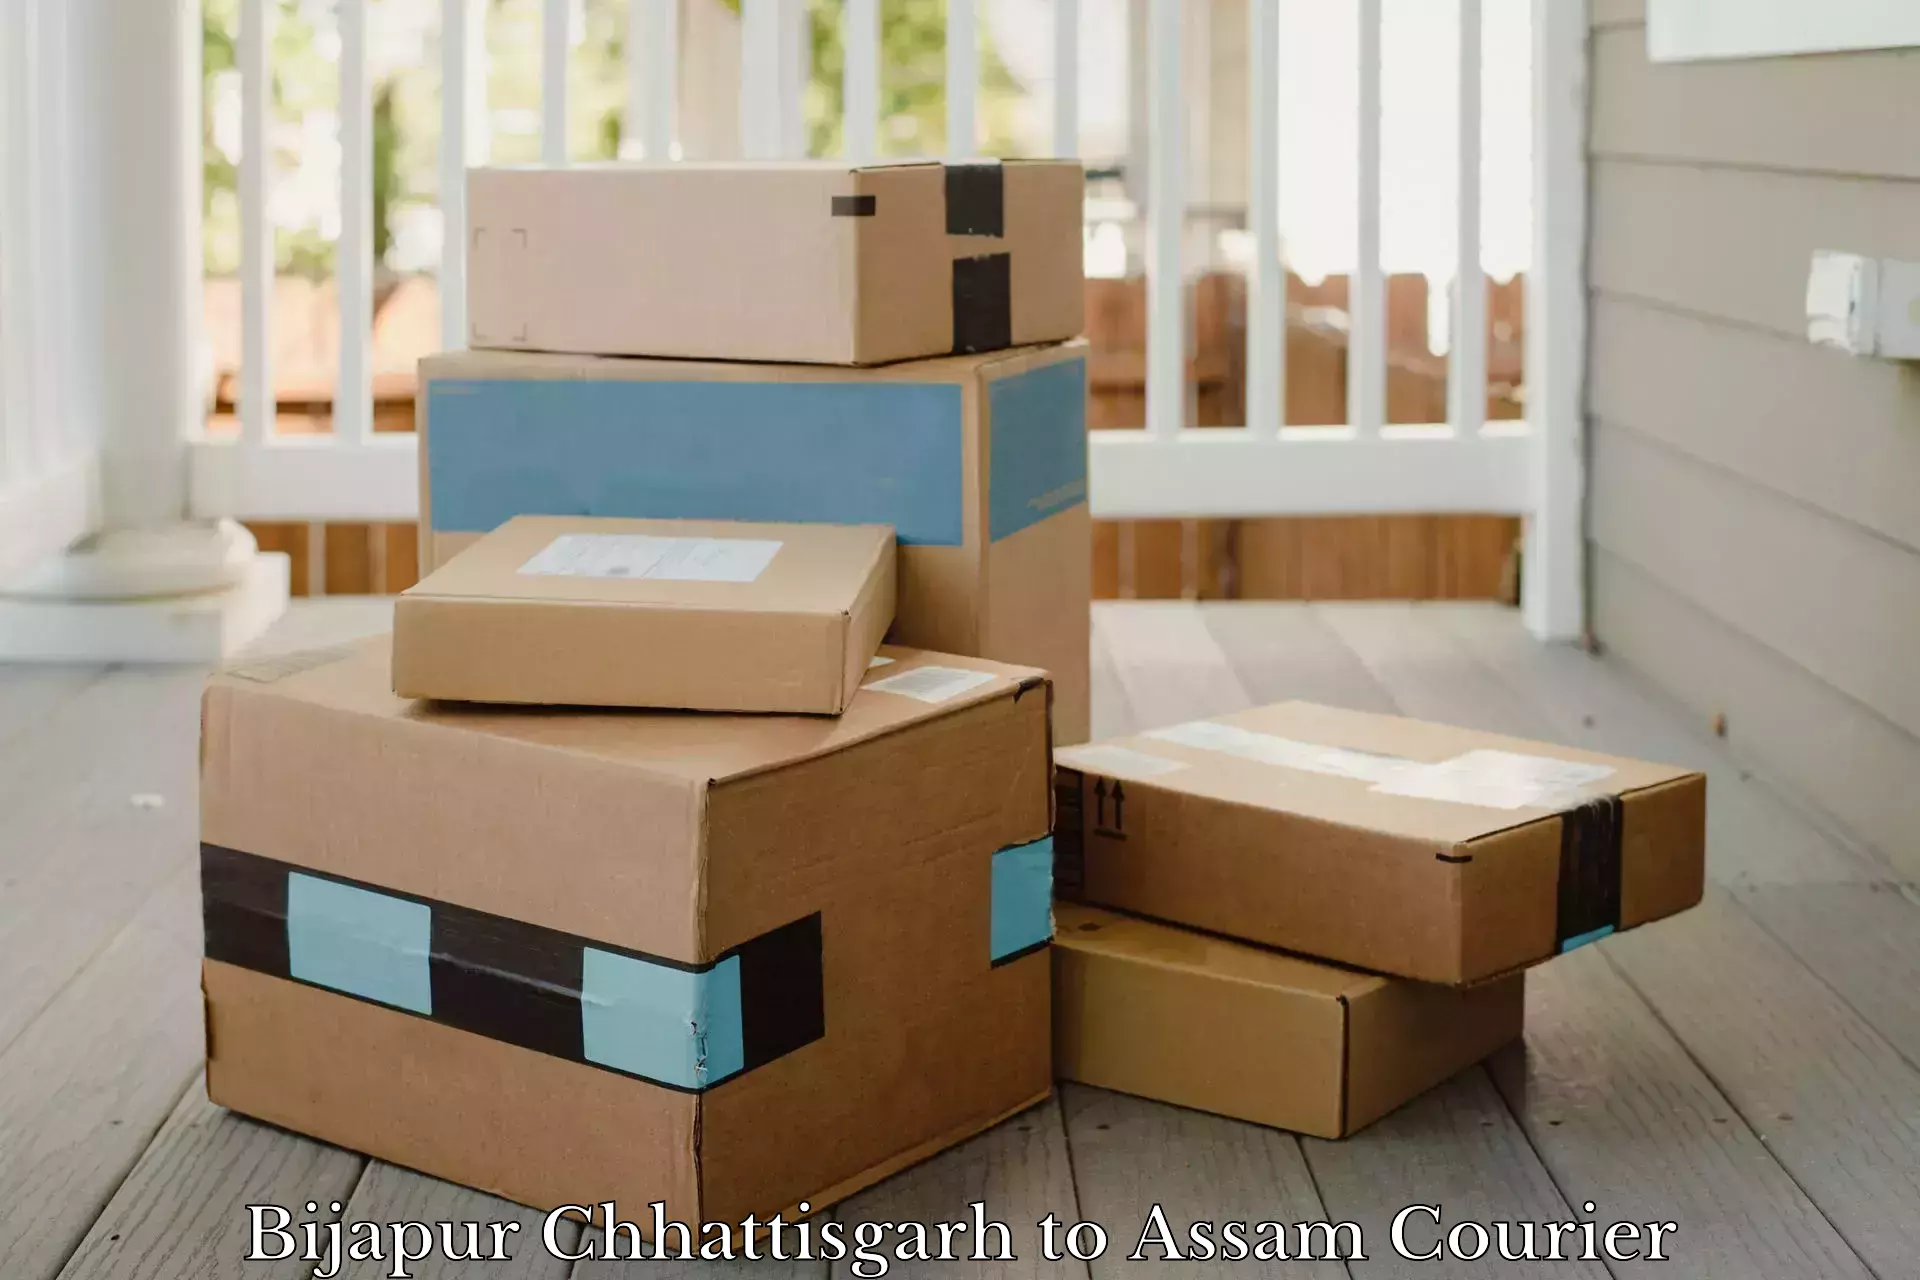 Cargo delivery service Bijapur Chhattisgarh to Lala Assam